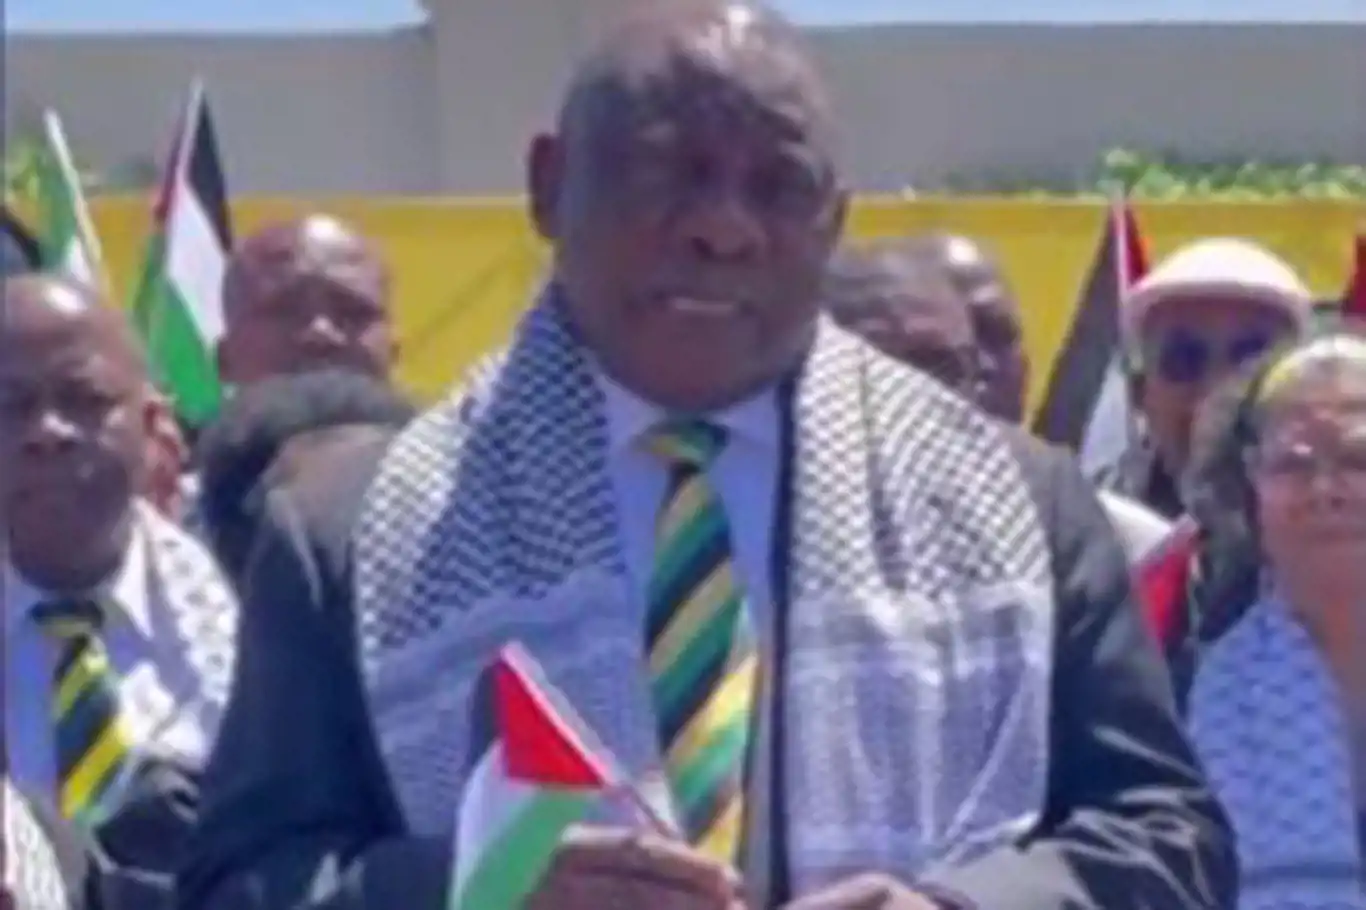 Güney Afrika Cumhuriyeti Cumhurbaşkanından Filistin ile dayanışma mesajı